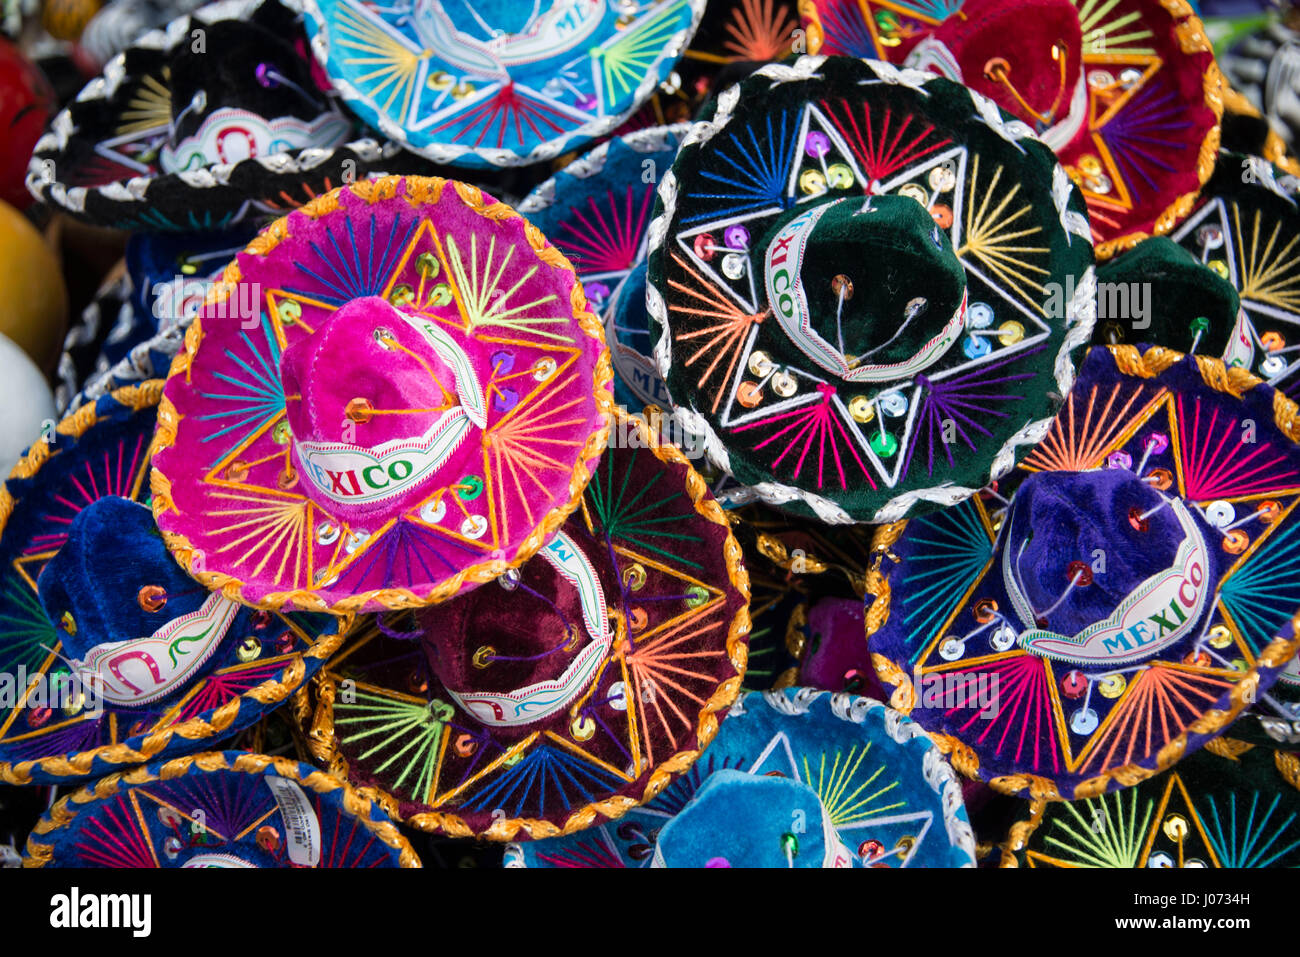 Sombreros mexicains colorés au cours du marché au Mexique Banque D'Images